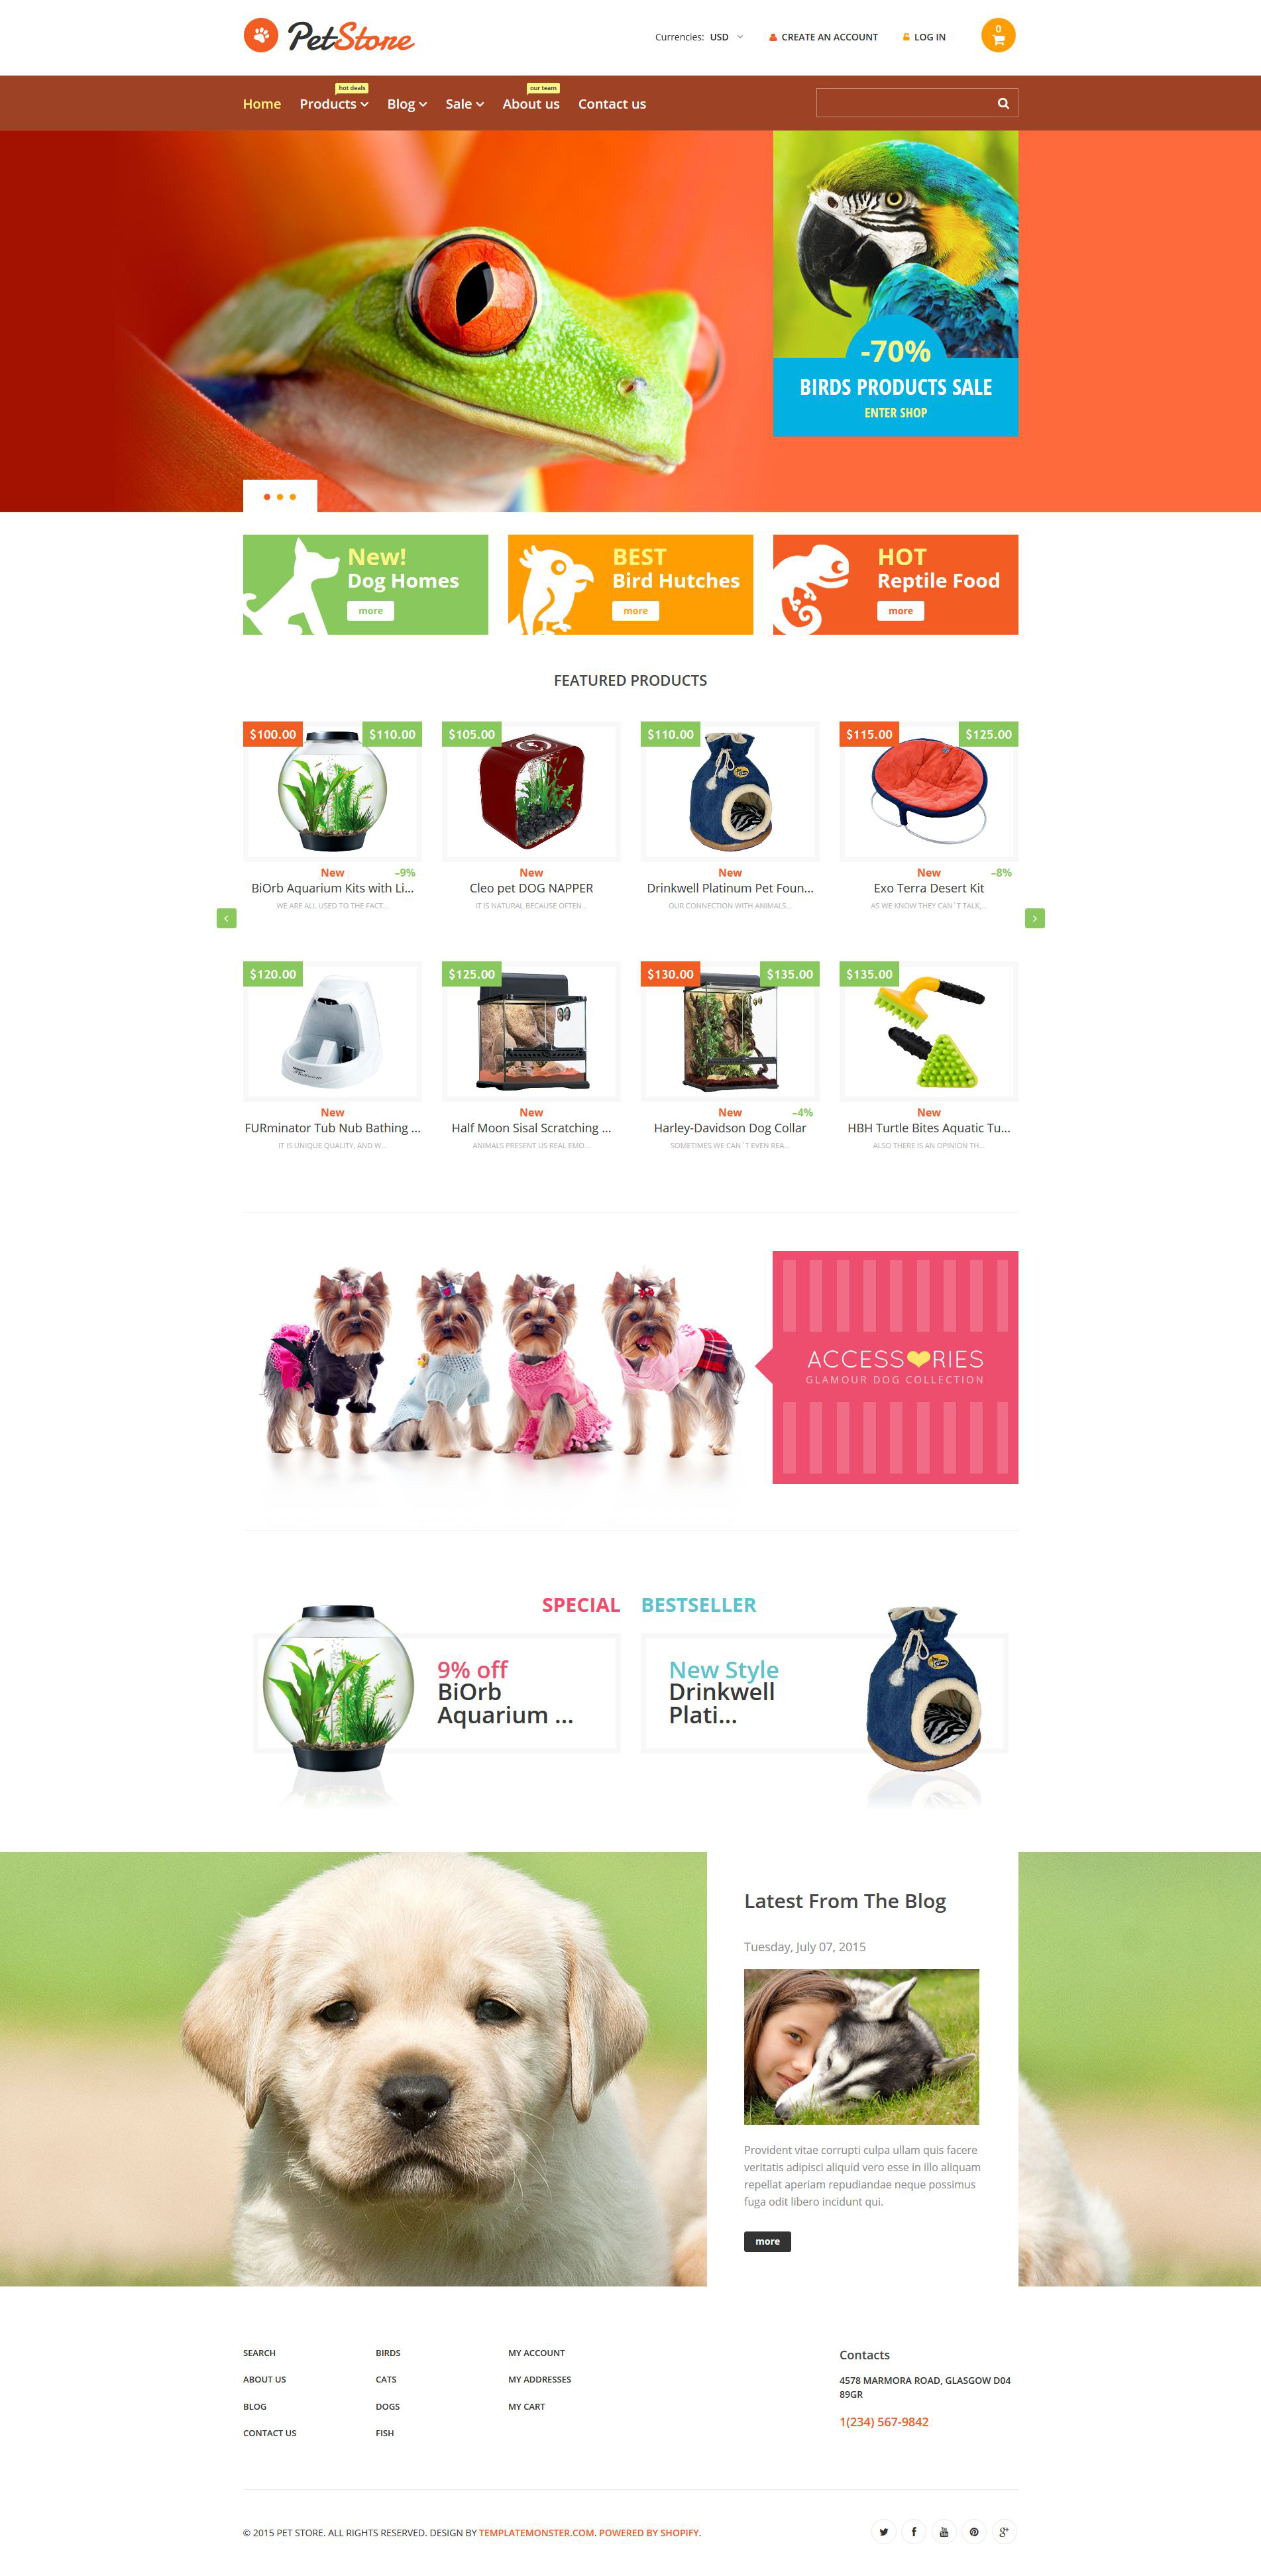 Pet Shop Responsive Shopify Theme